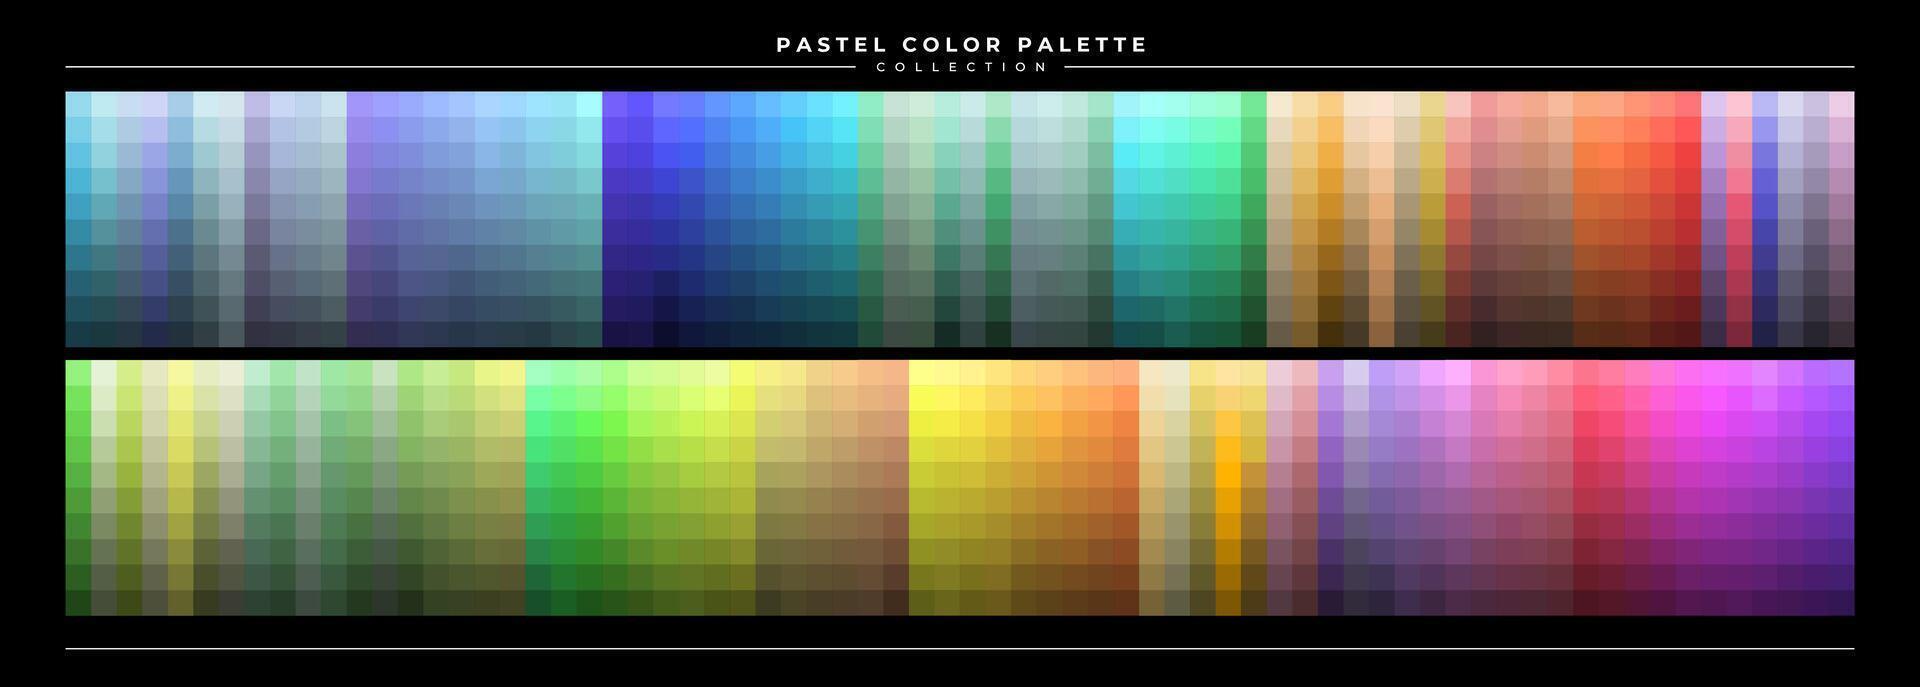 einstellen von Pastell- Farbe Palette Katalog Design vektor